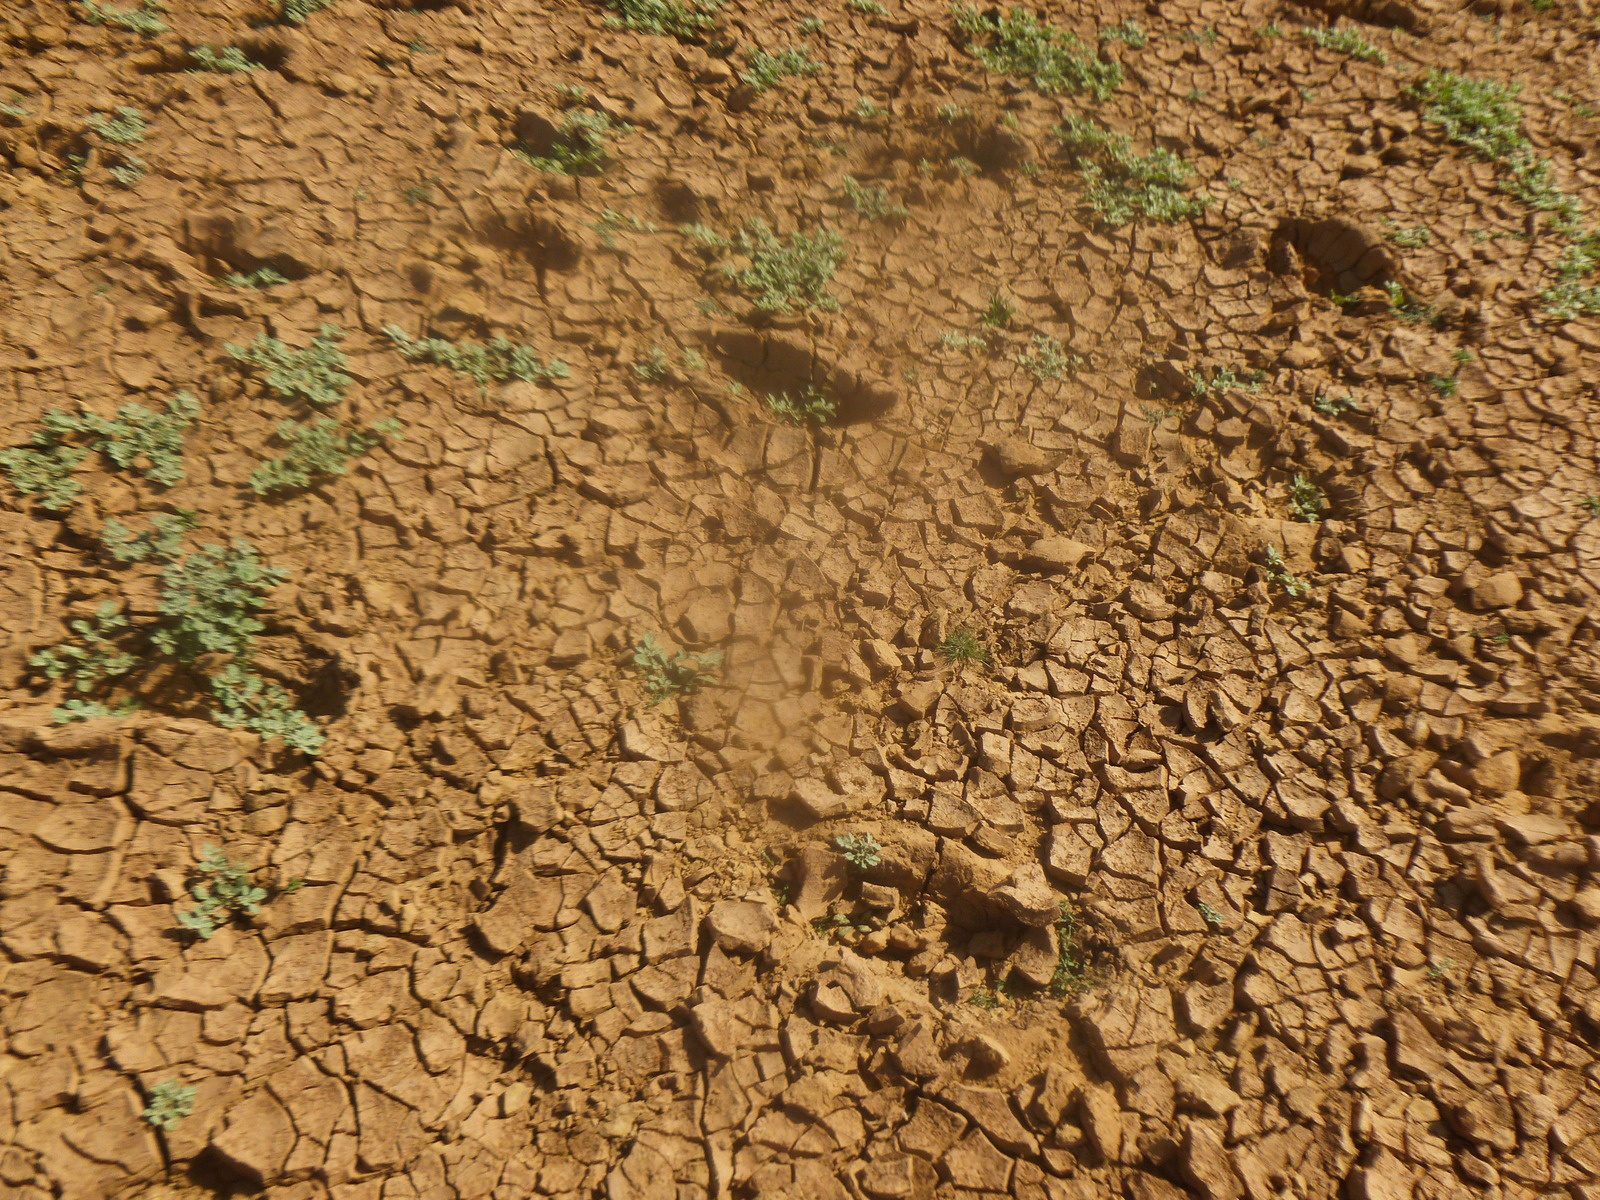     Météo : un mois de novembre plus sec que d'habitude 

